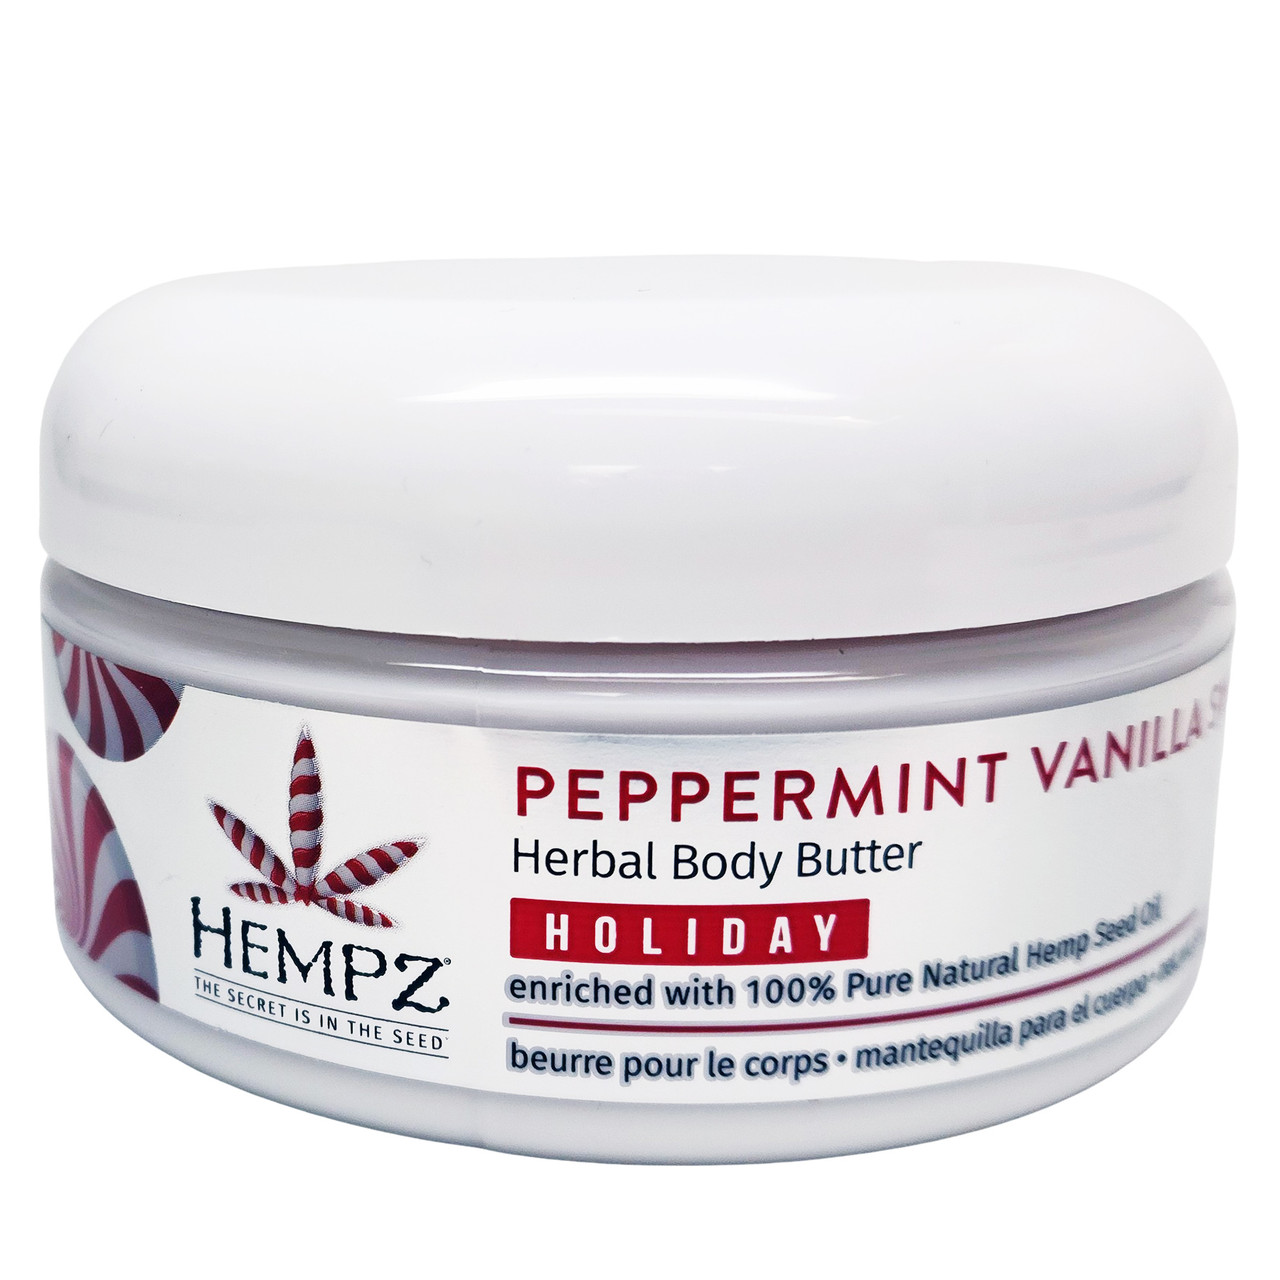 Hempz Peppermint Vanilla Swirl Body Butter 8oz